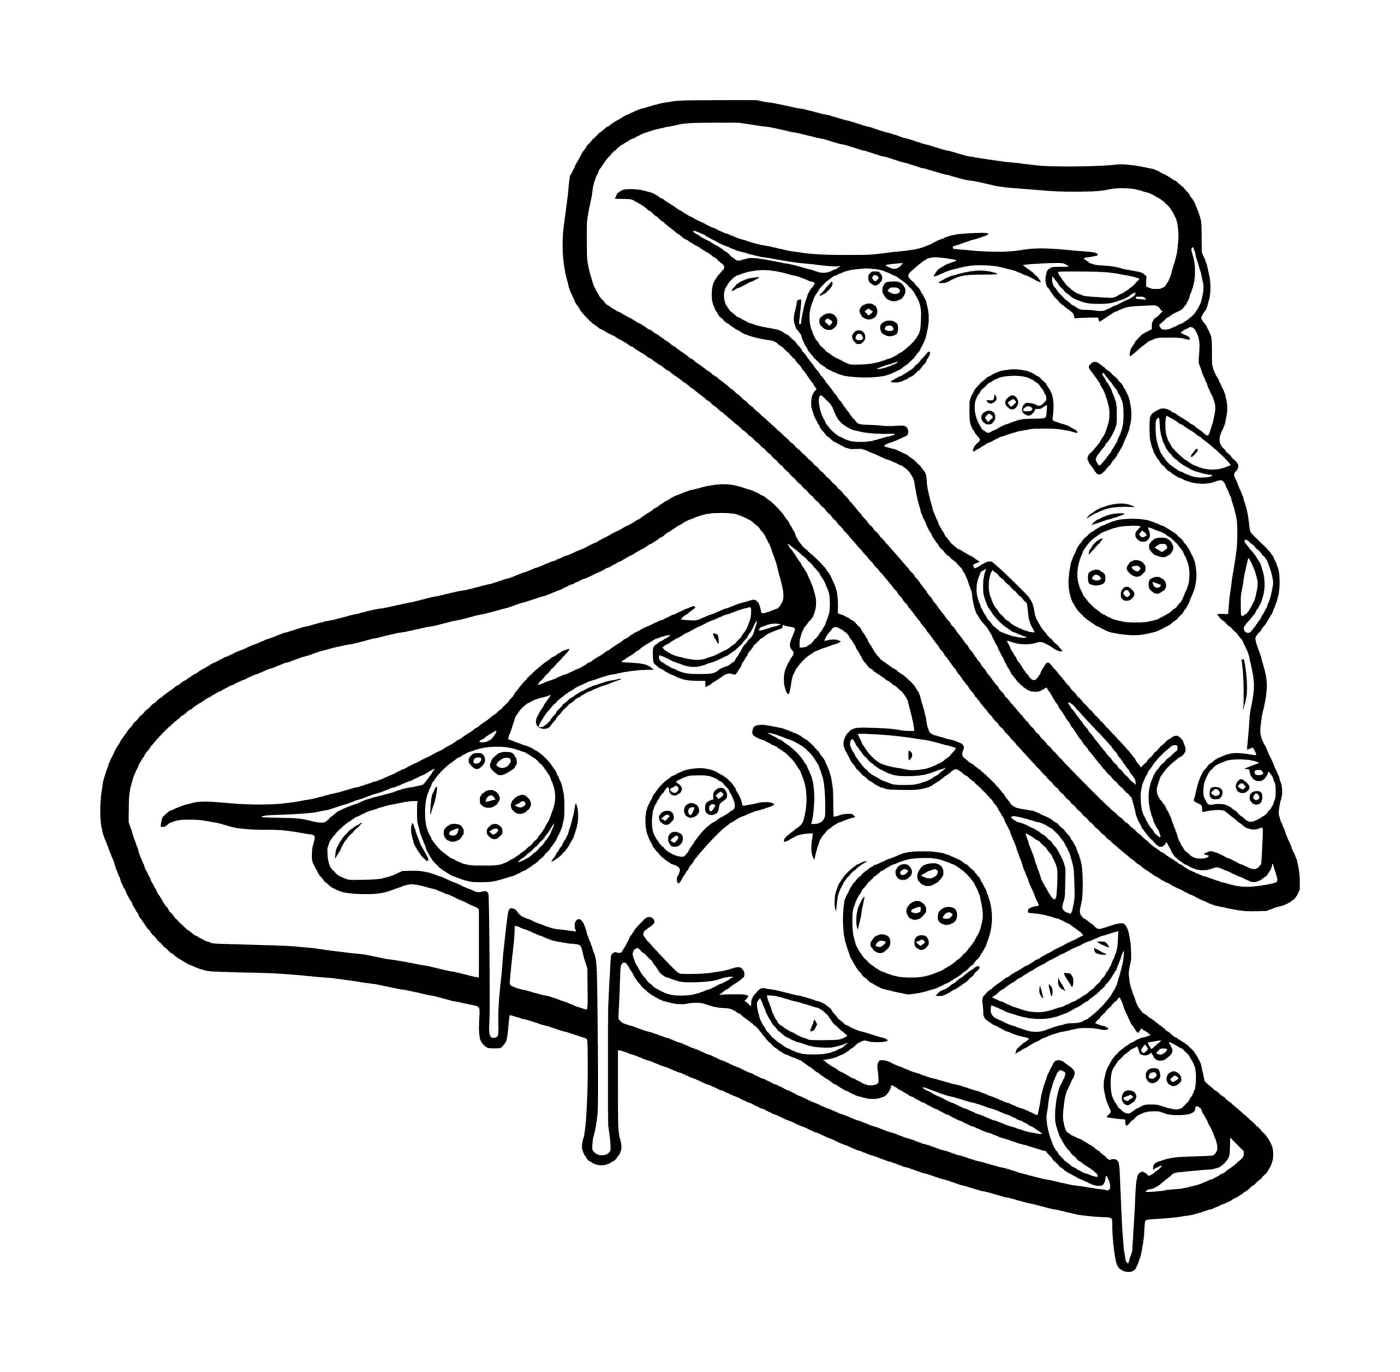  Две сырные пиццы и пепперони 